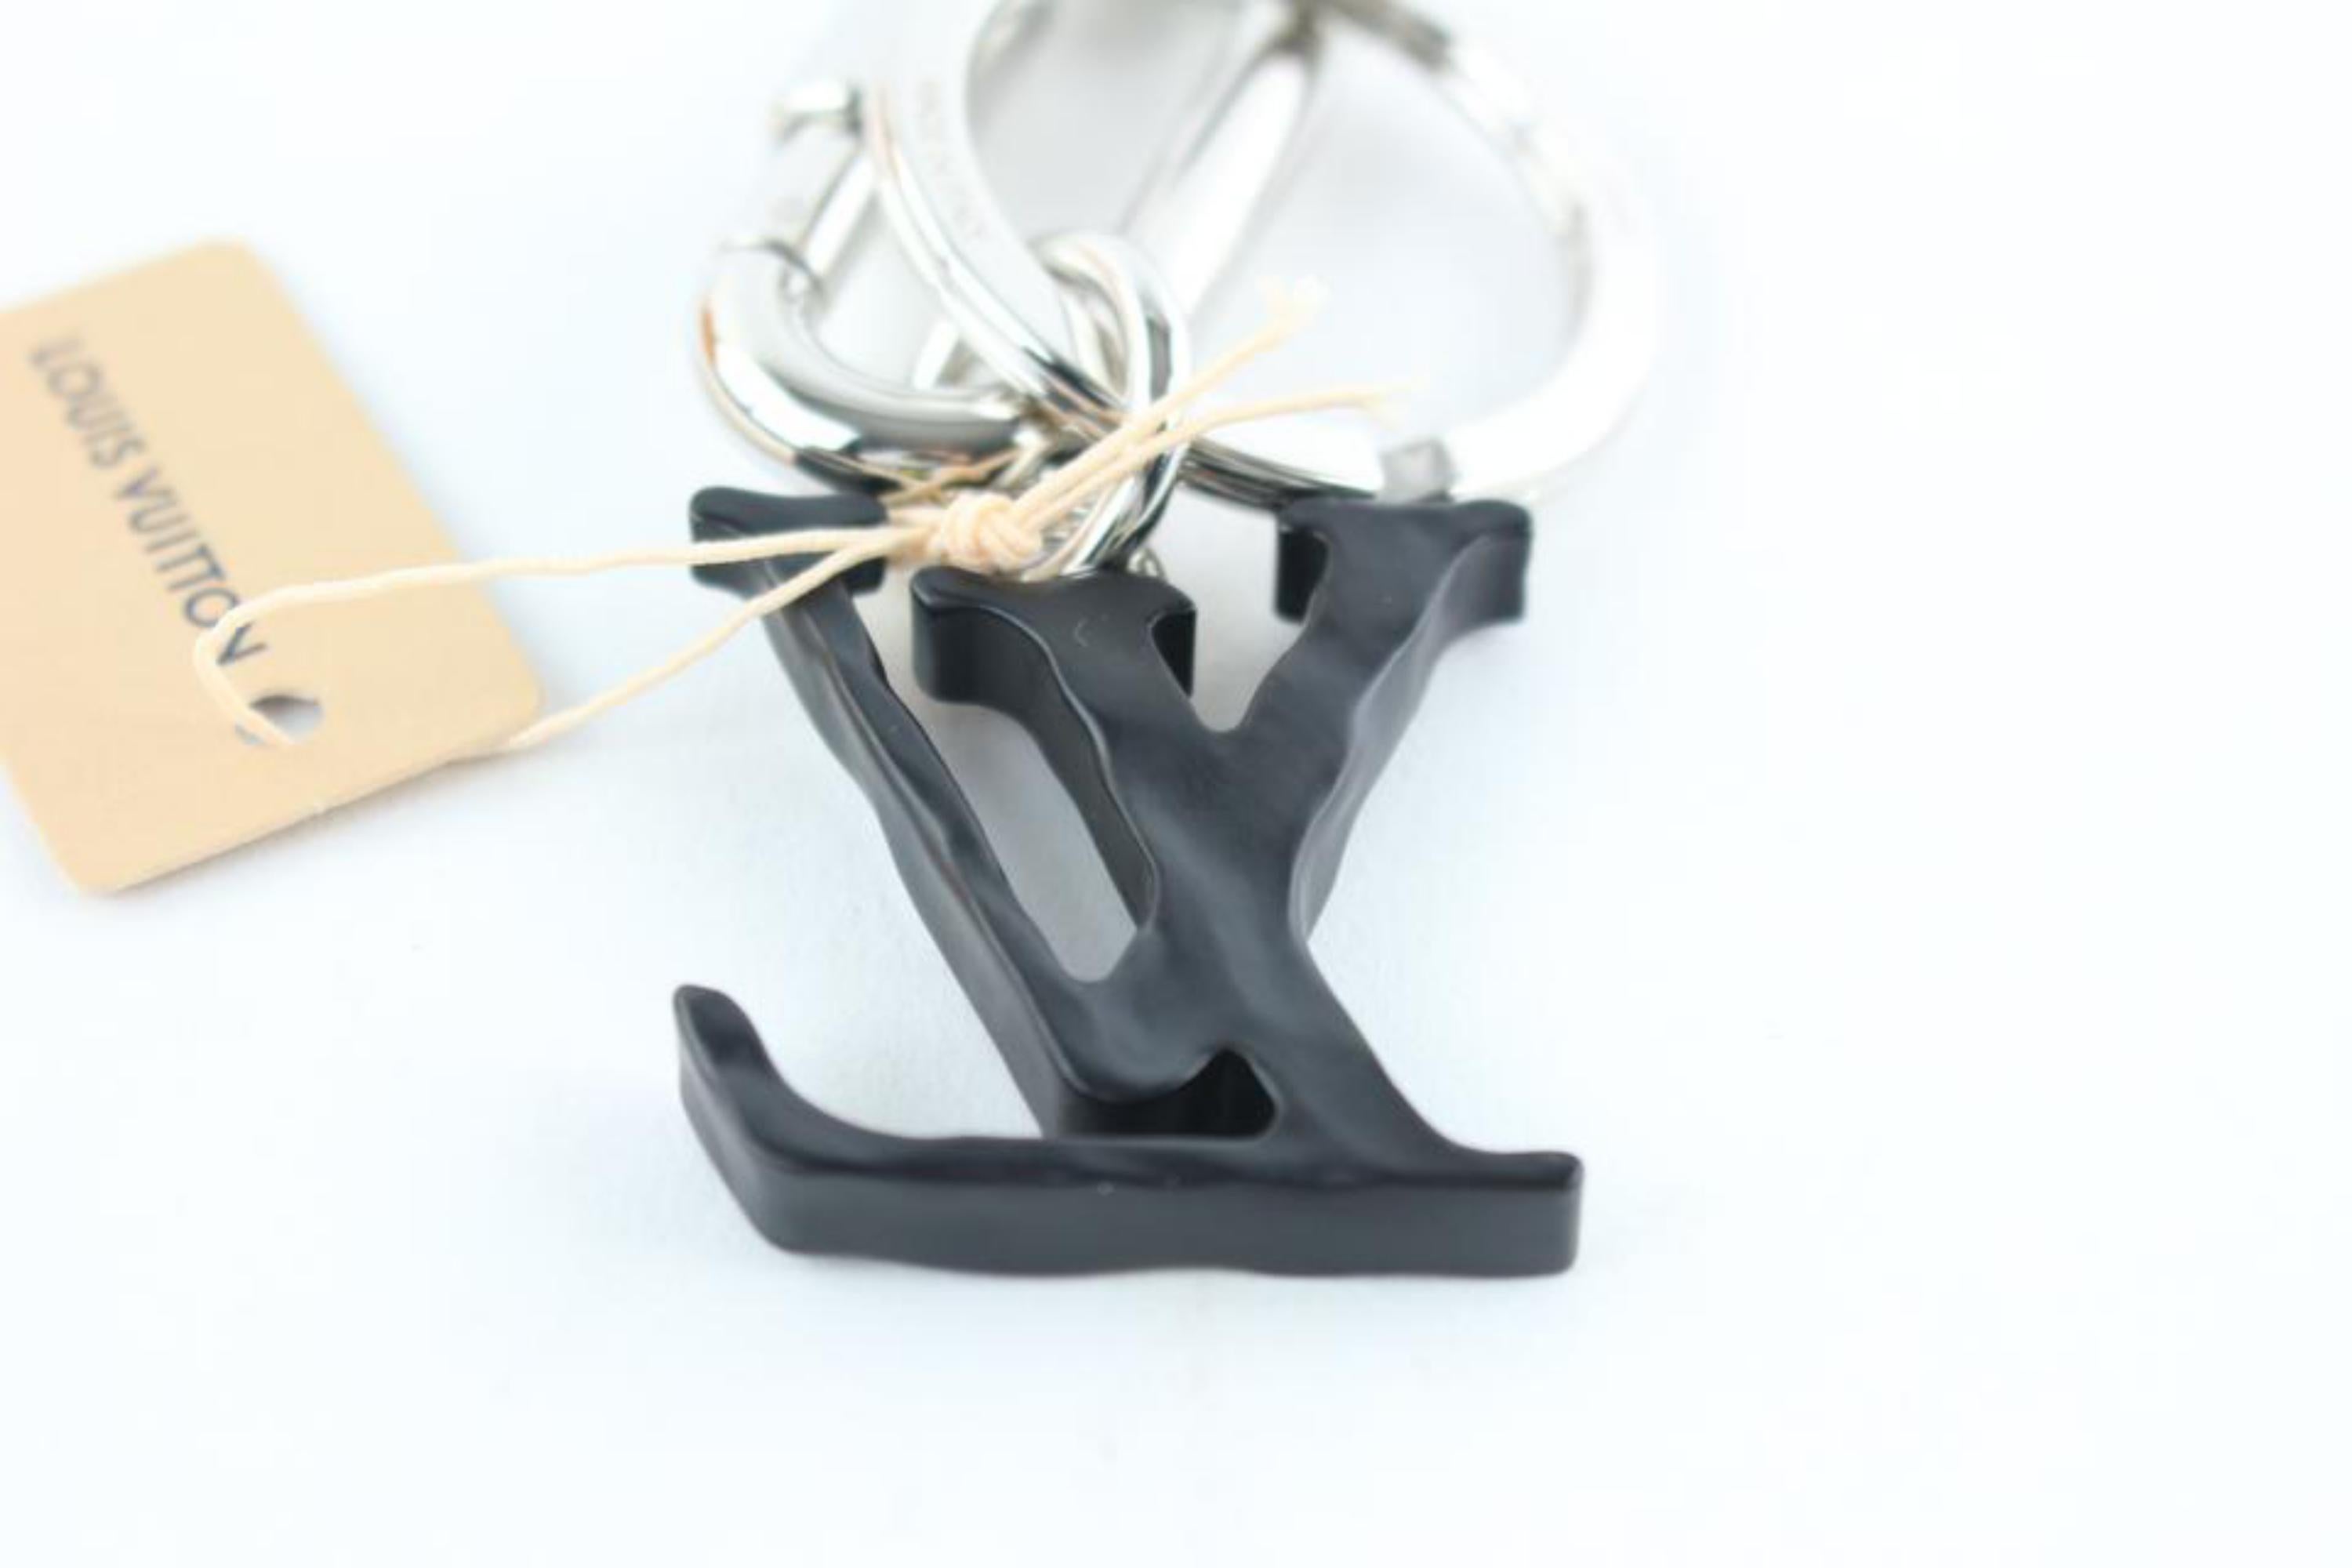 Louis Vuitton Abloh Ss19 Lv Initial Key Chain Ring Bag Pendant 21le0110  For Sale 3